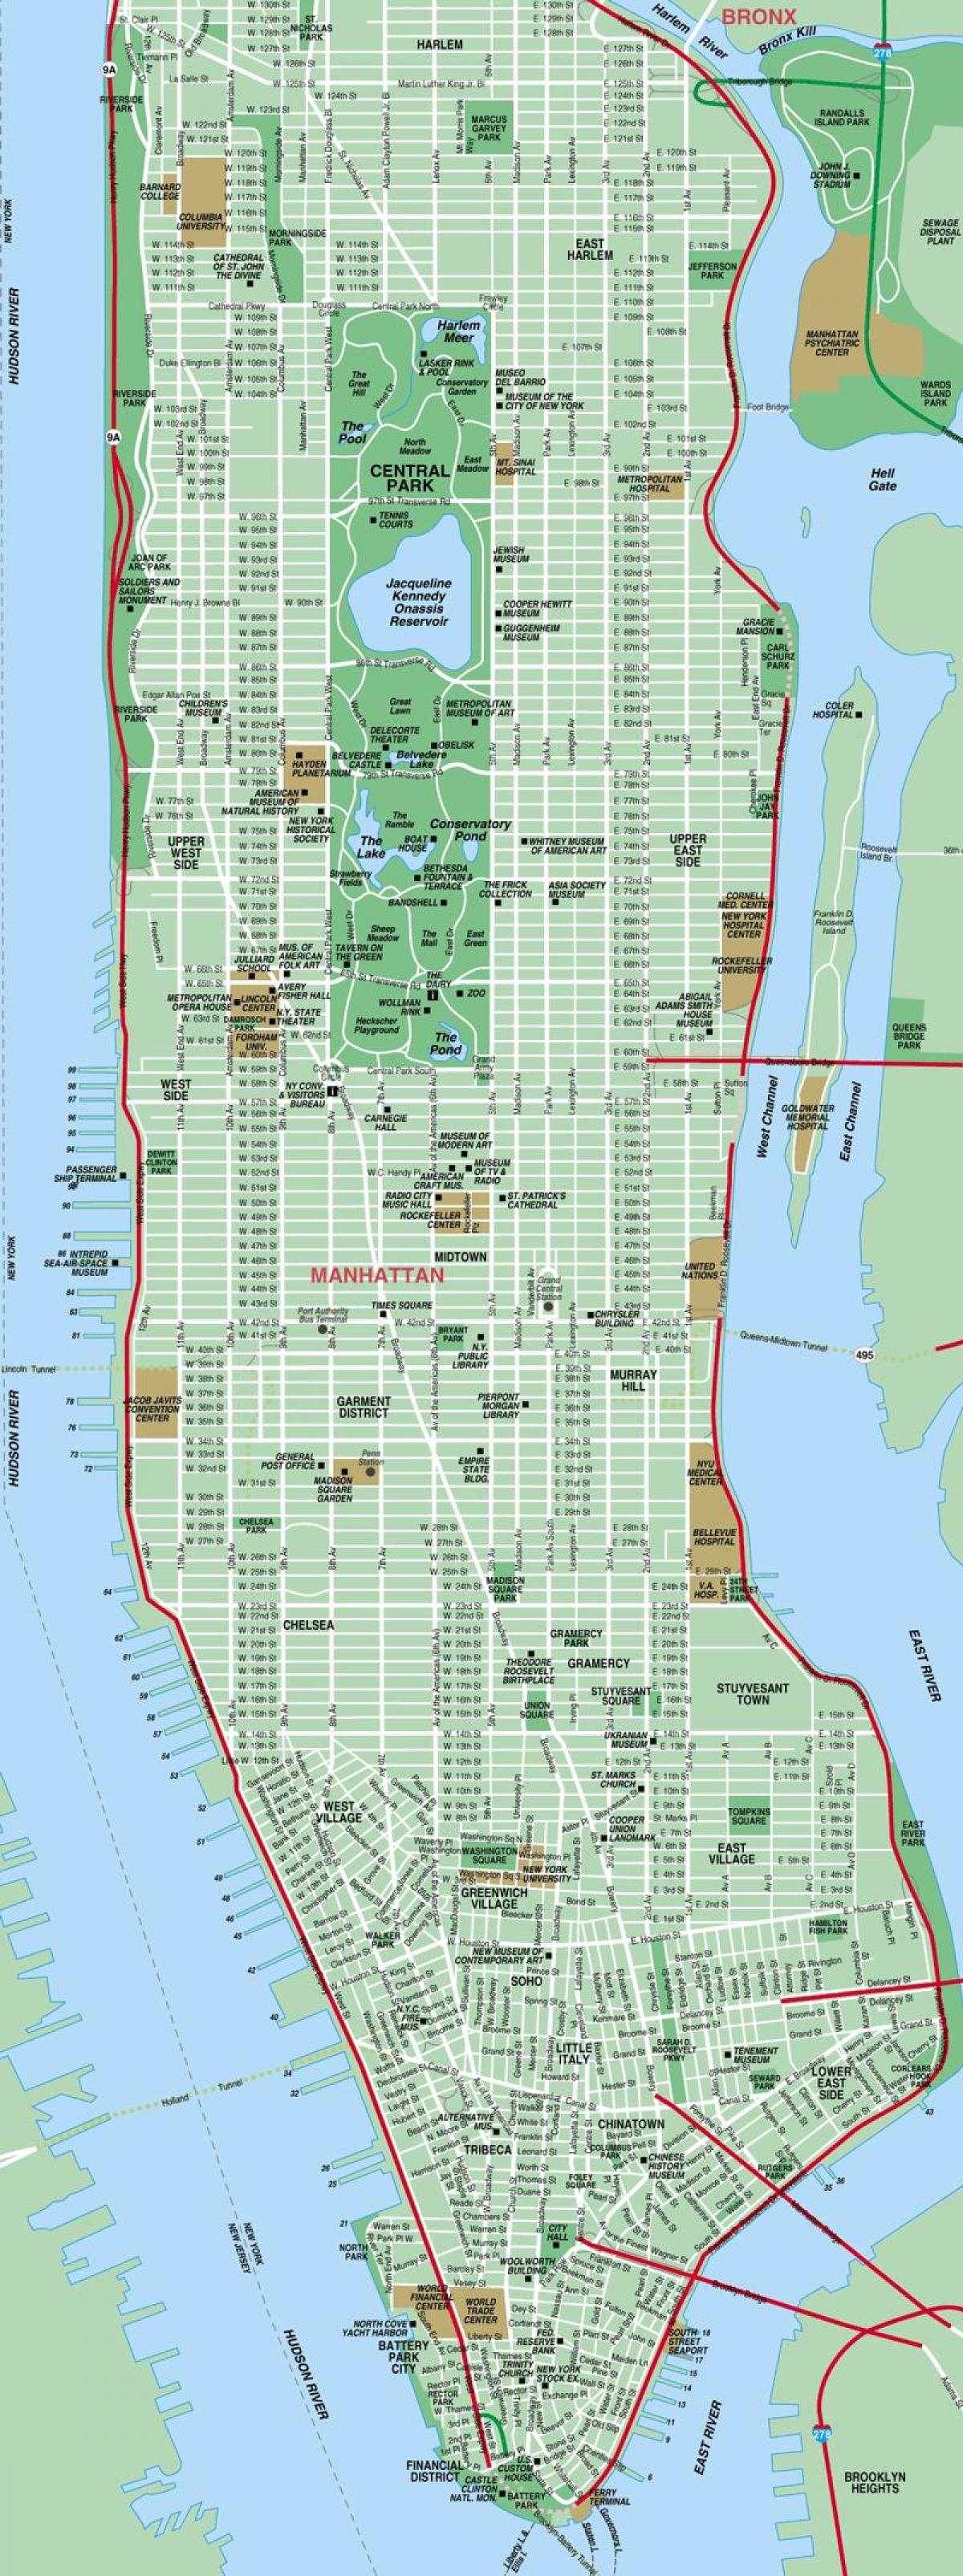 street kart over Manhattan ny